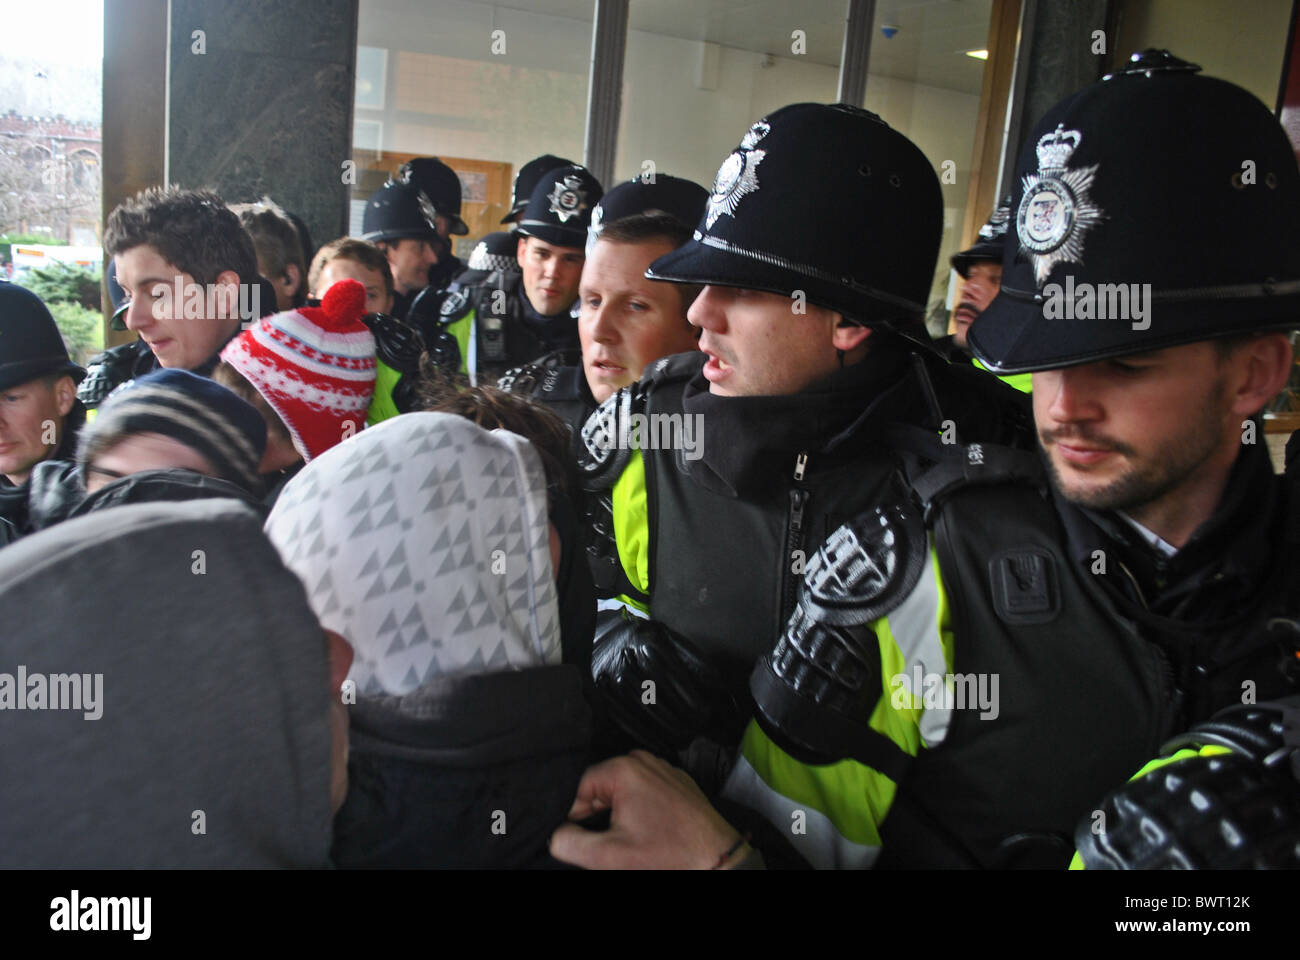 Studentendemonstranten Handgemenge mit der Polizei vor Senat Halle, Universität von Bristol während der Proteste gegen steigende Studiengebühren Stockfoto